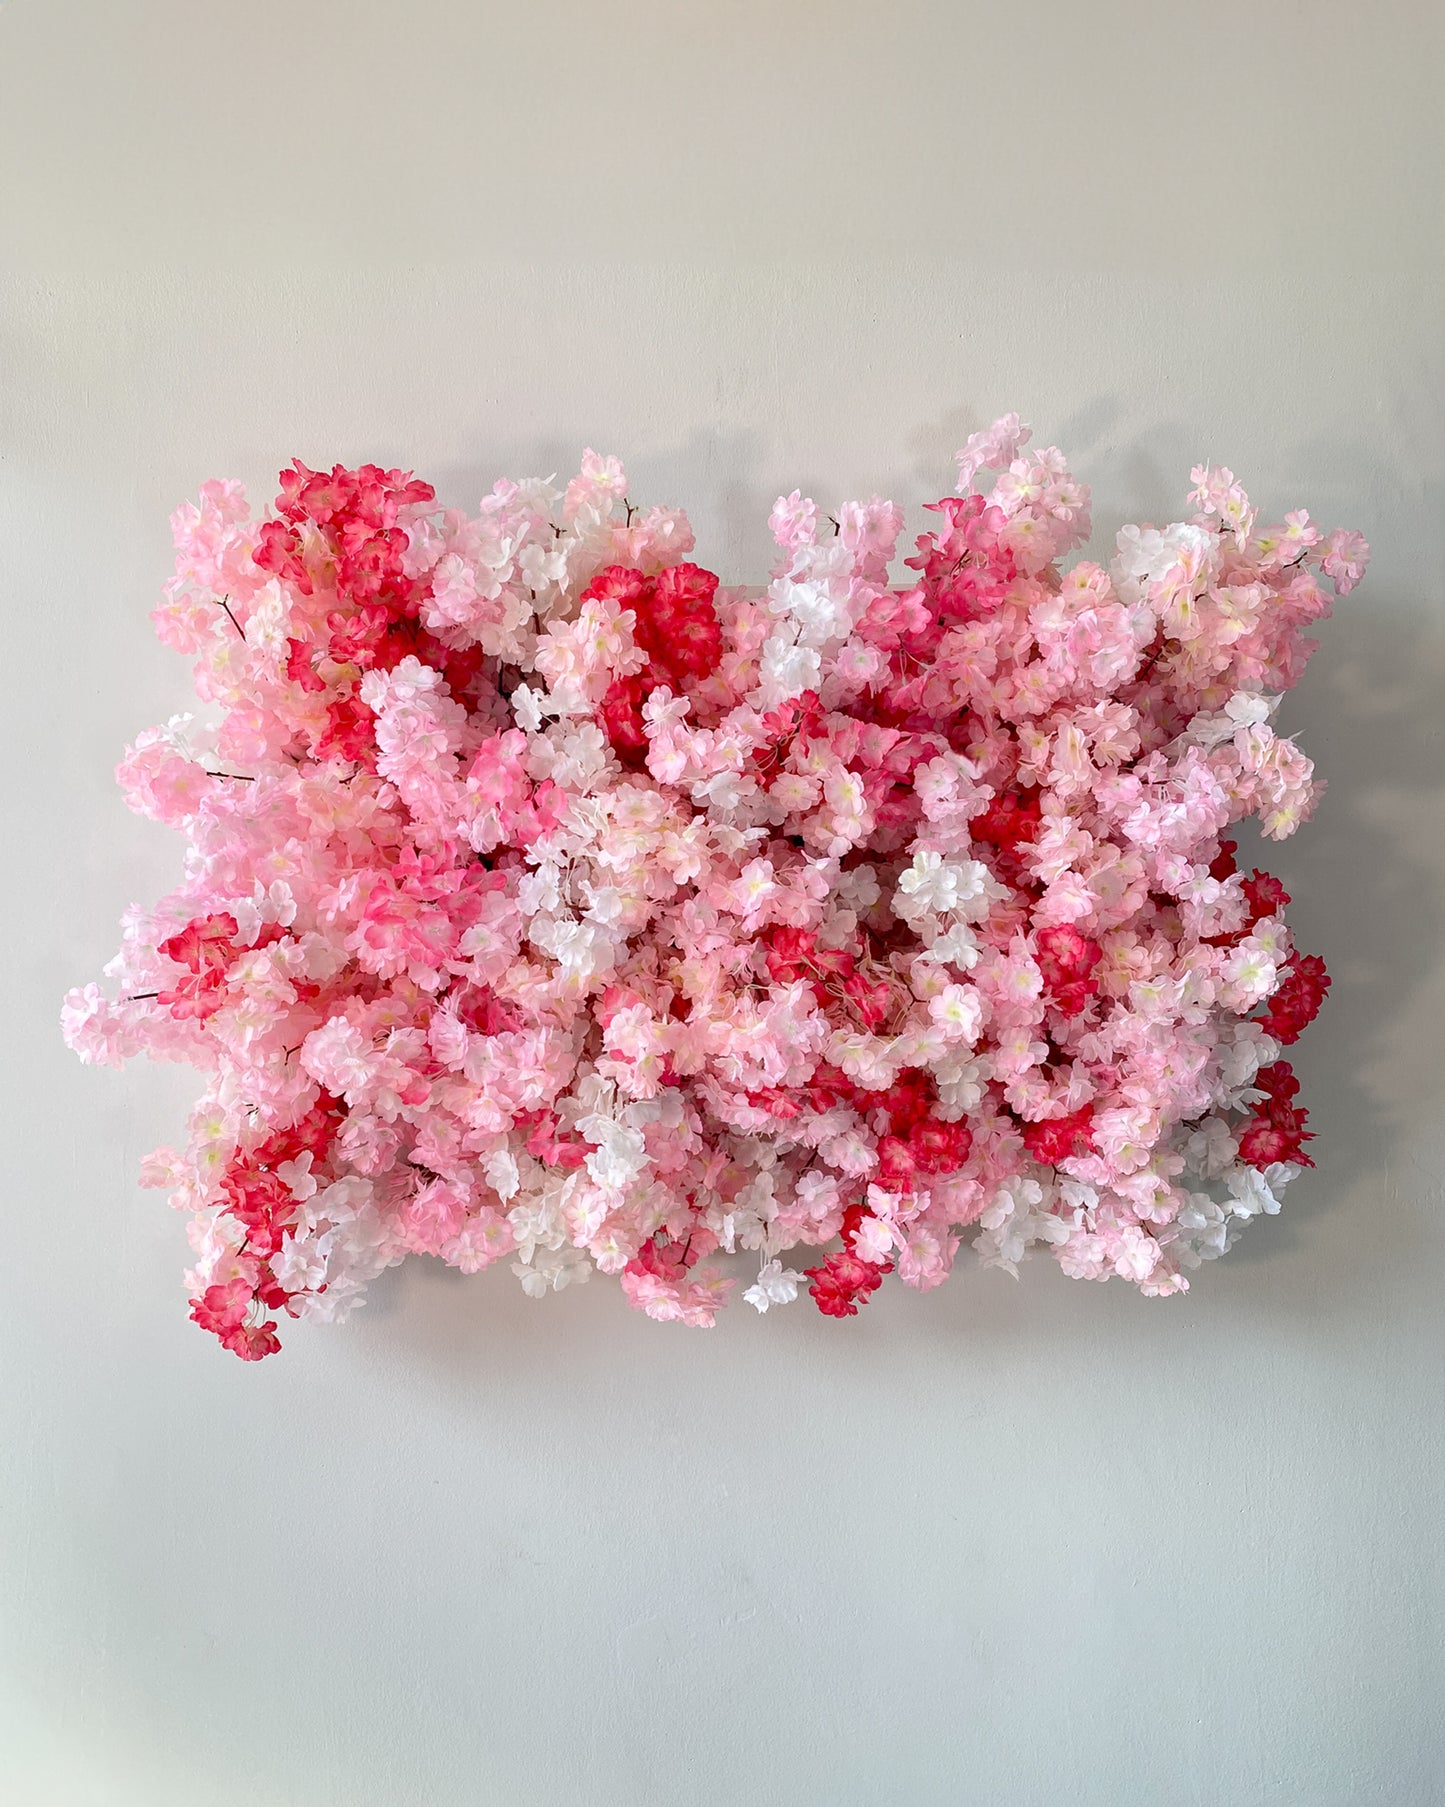 Flowerframe "CHERRY BLOSSOM" aus Realtouch Kunstpflanzen, Holzrahmen mit weißem Decor